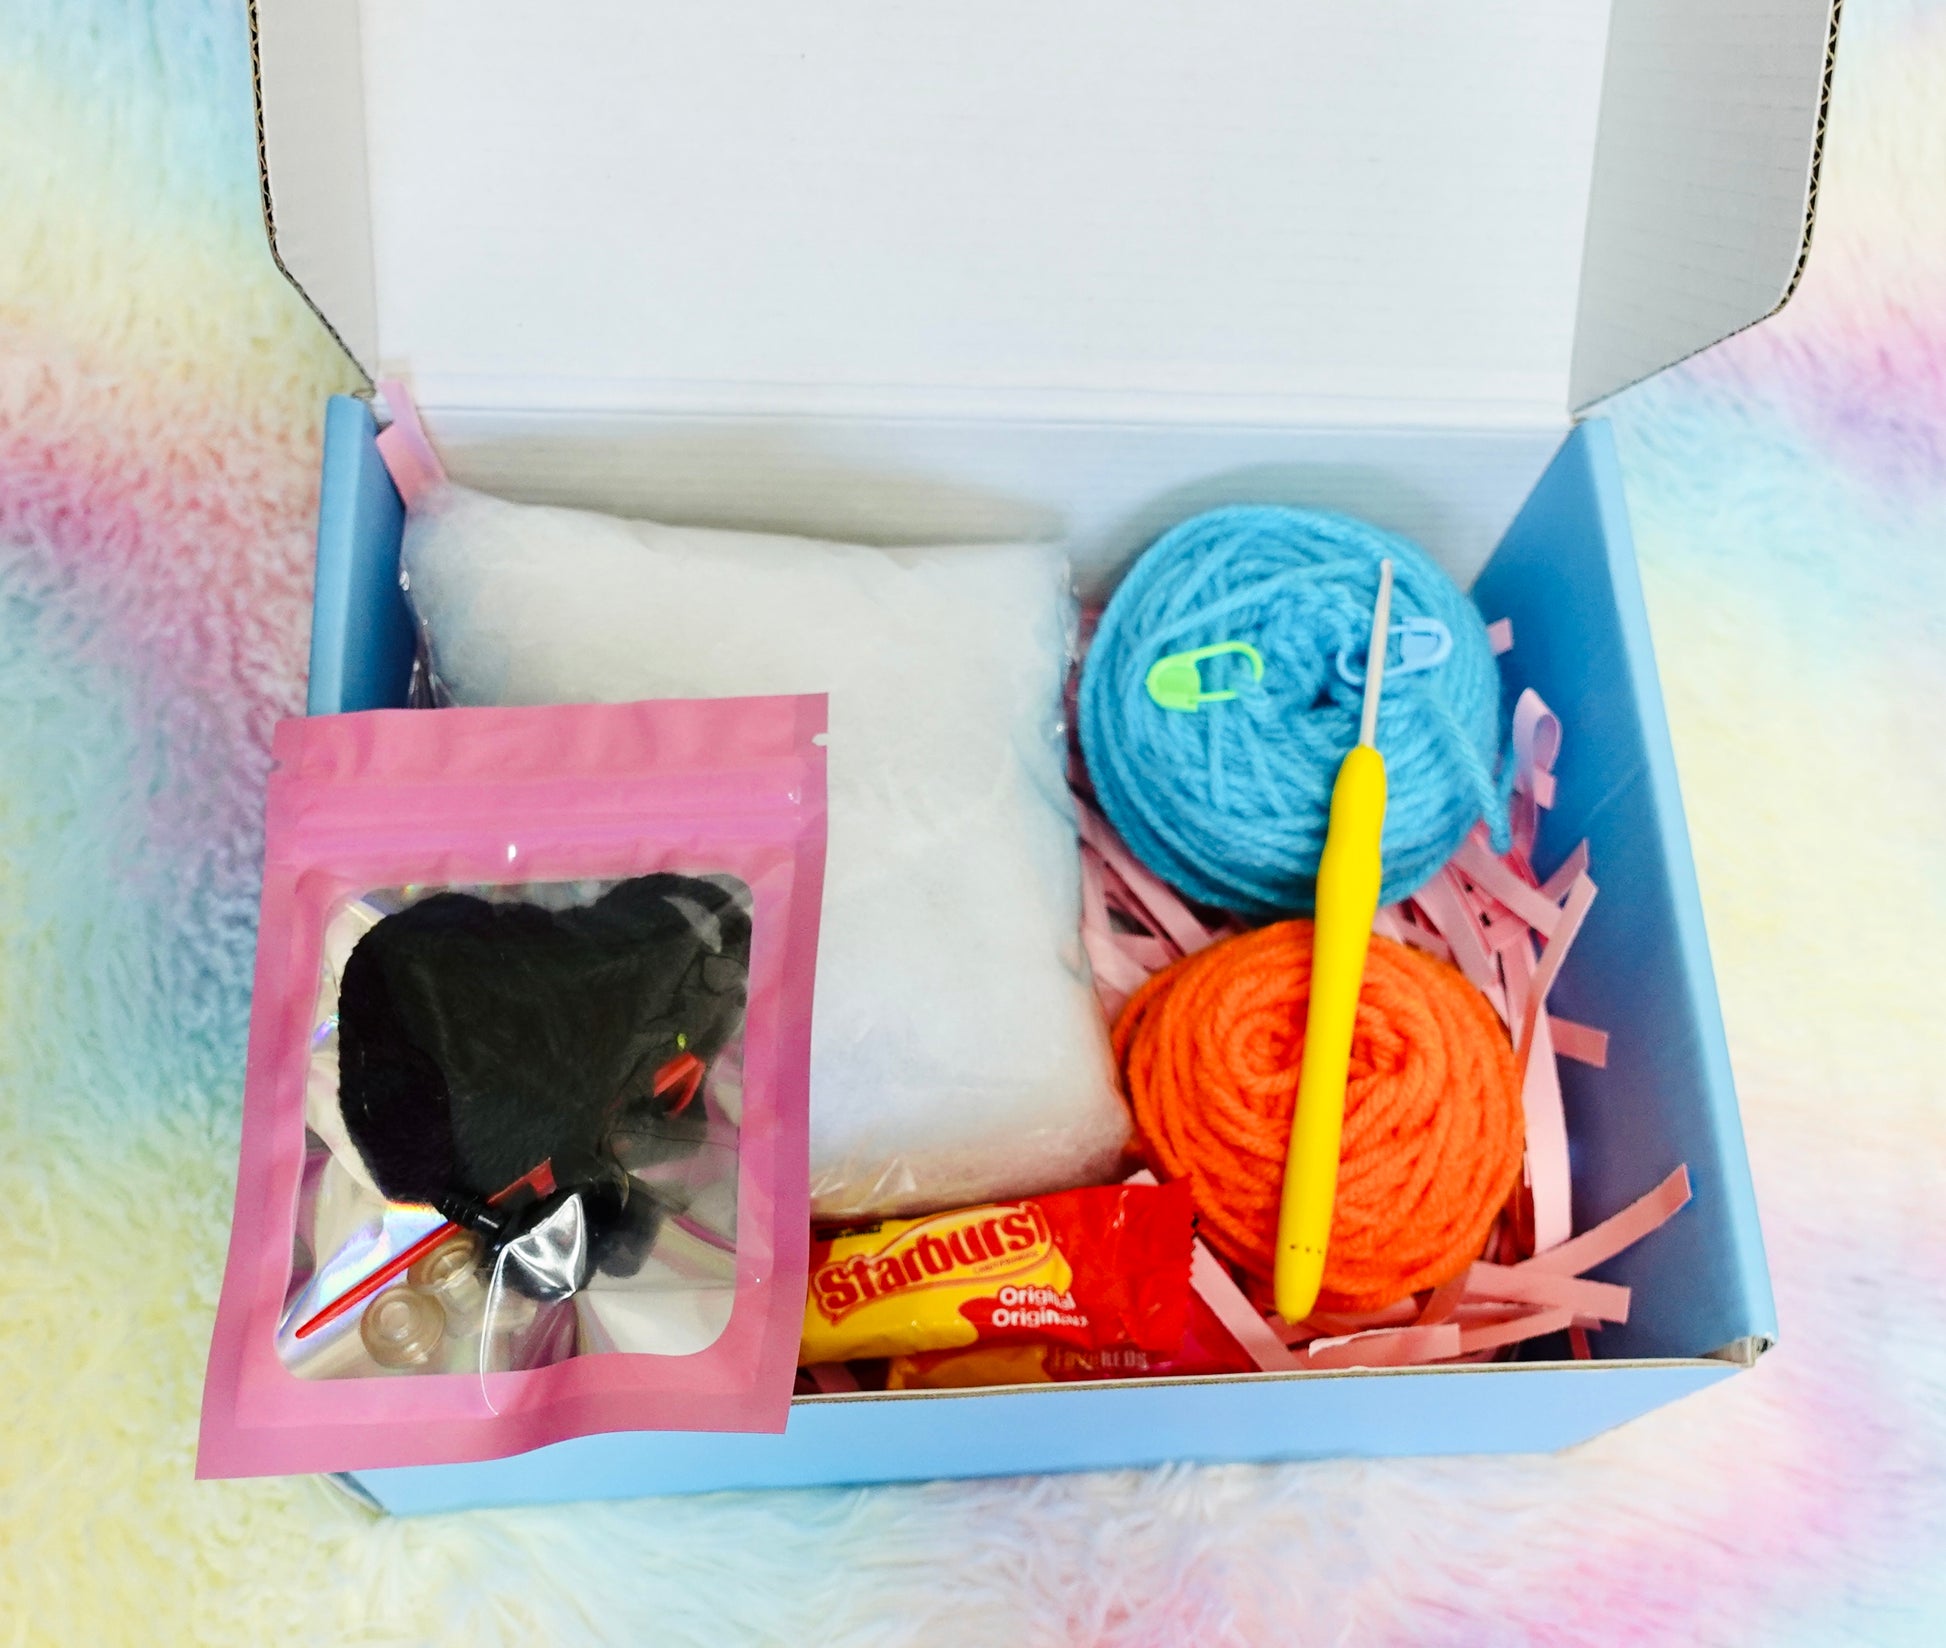 Beginner Crochet kit